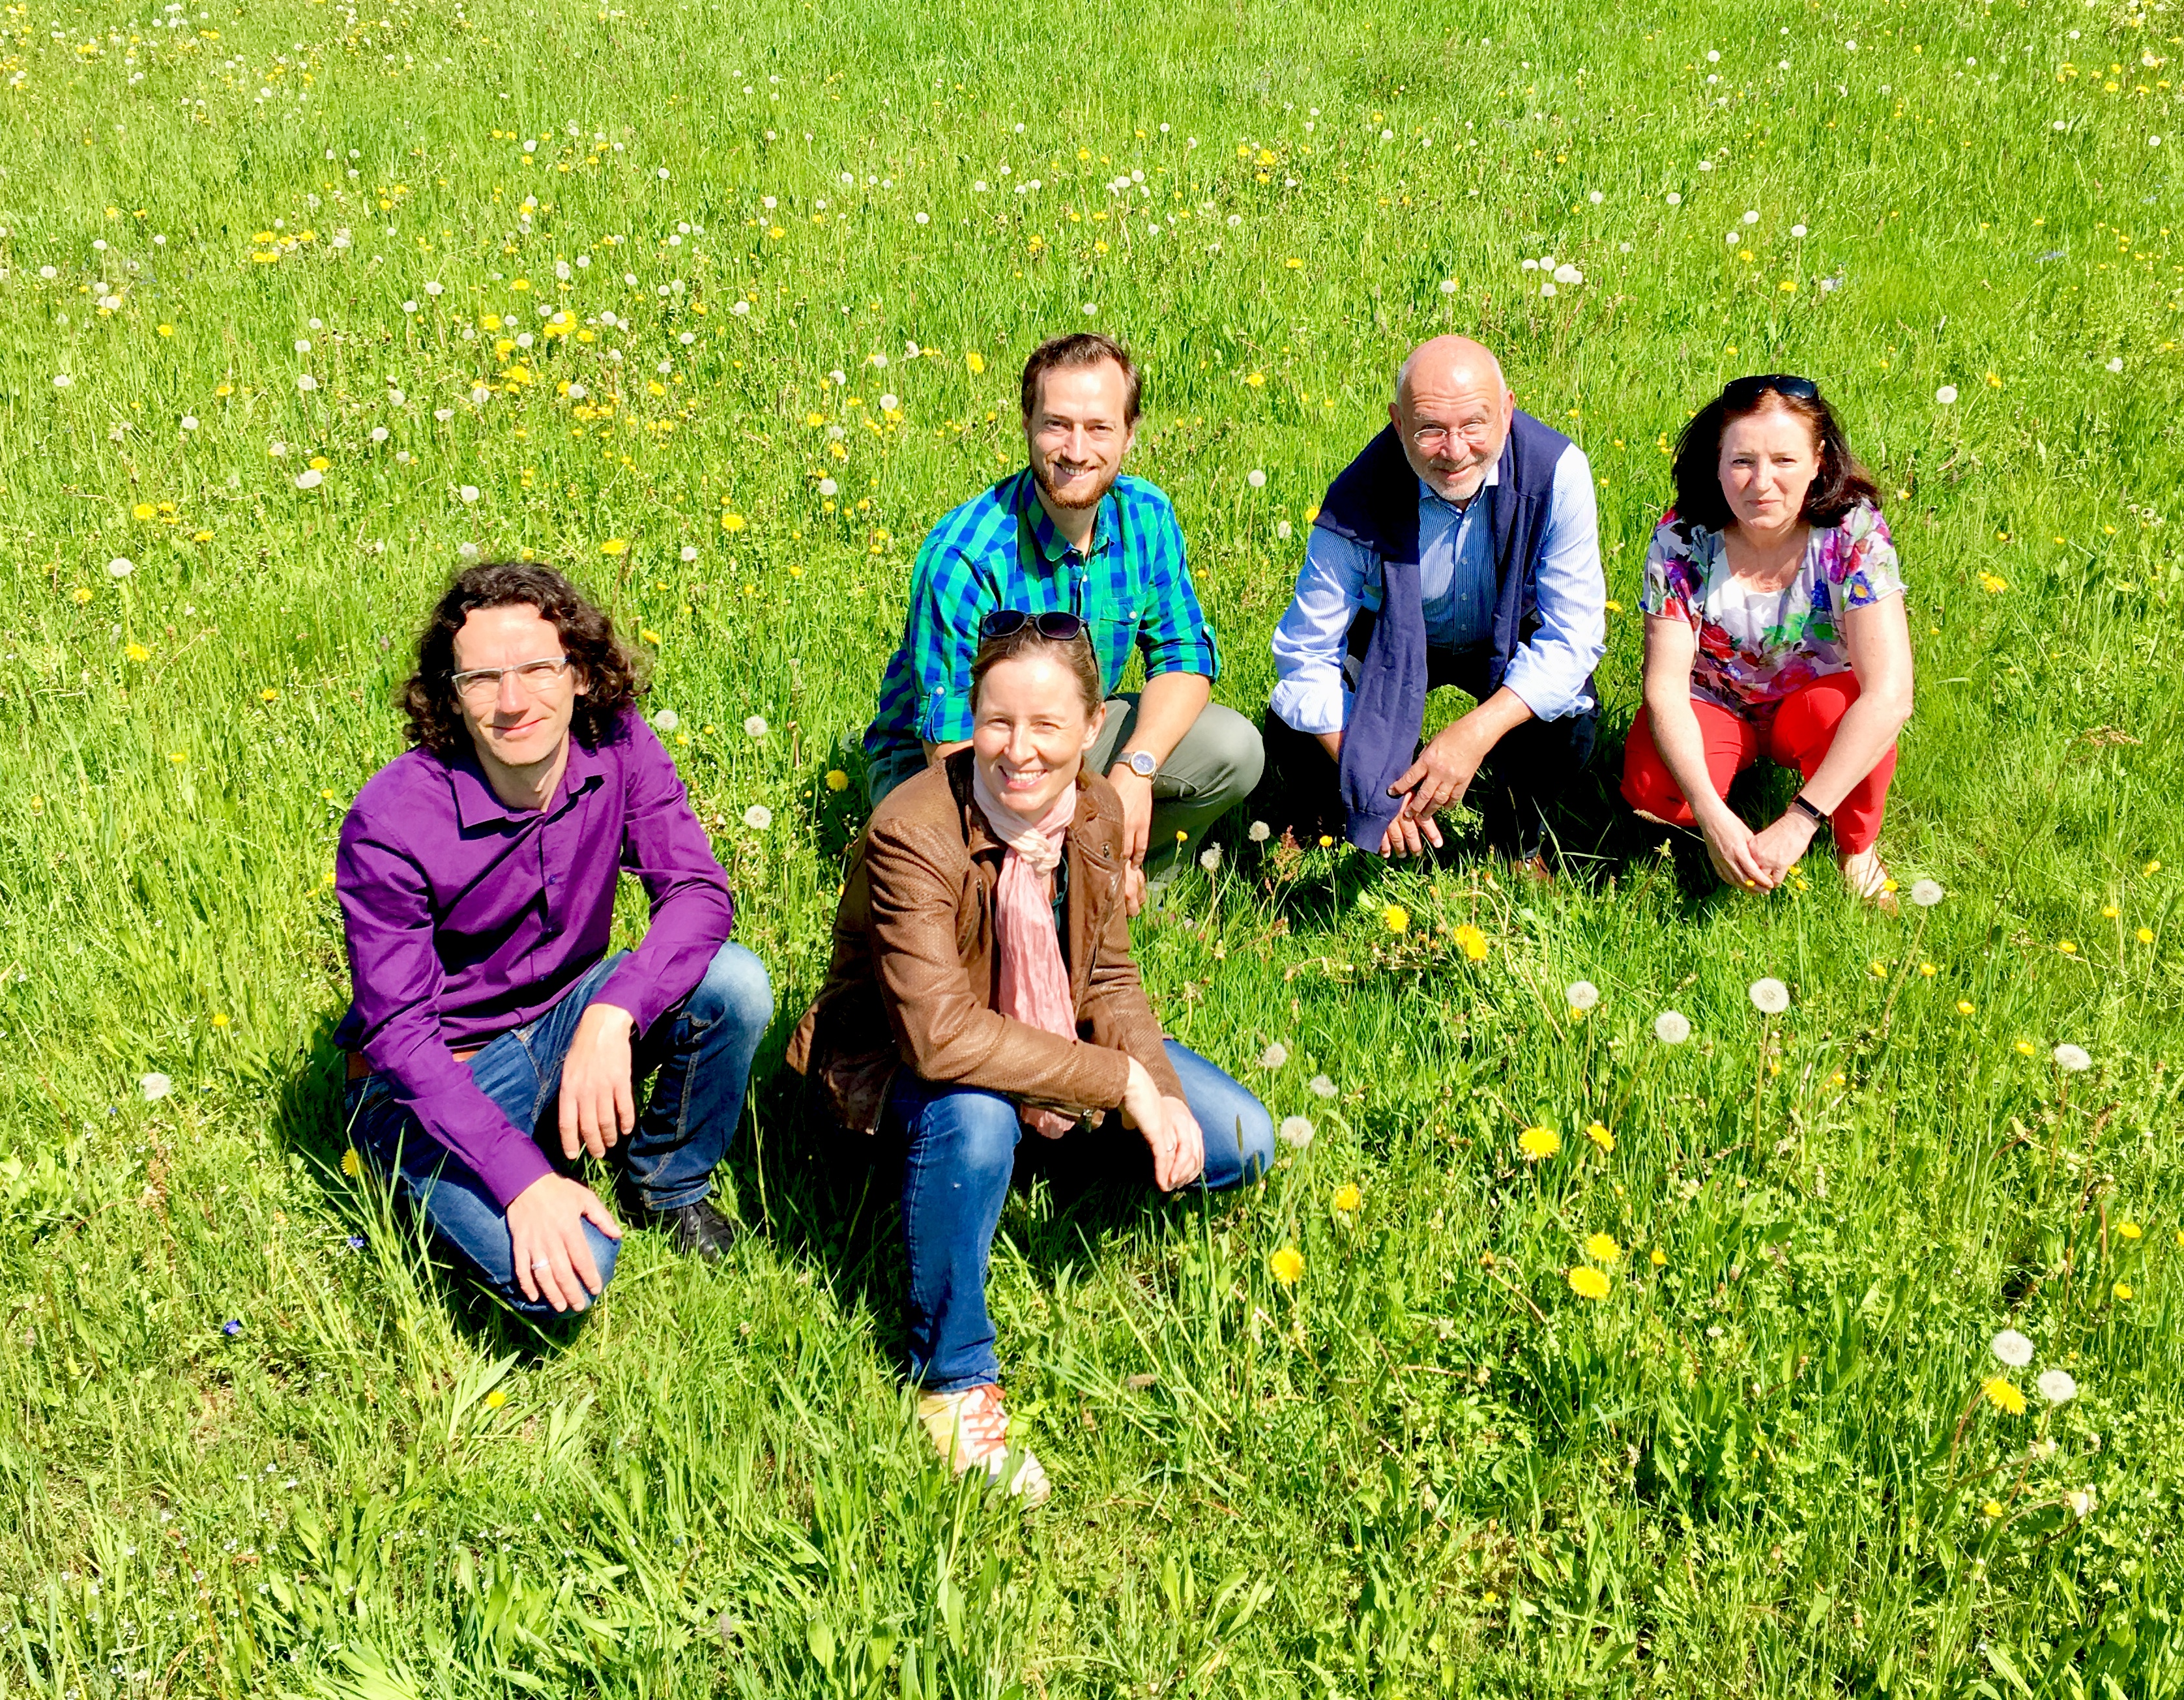 Sebastian Prigge, Marianne Merschhemke, Felix Straub, Jürgen Fremd und Giesela Schleidt sitzend in einer Wiese